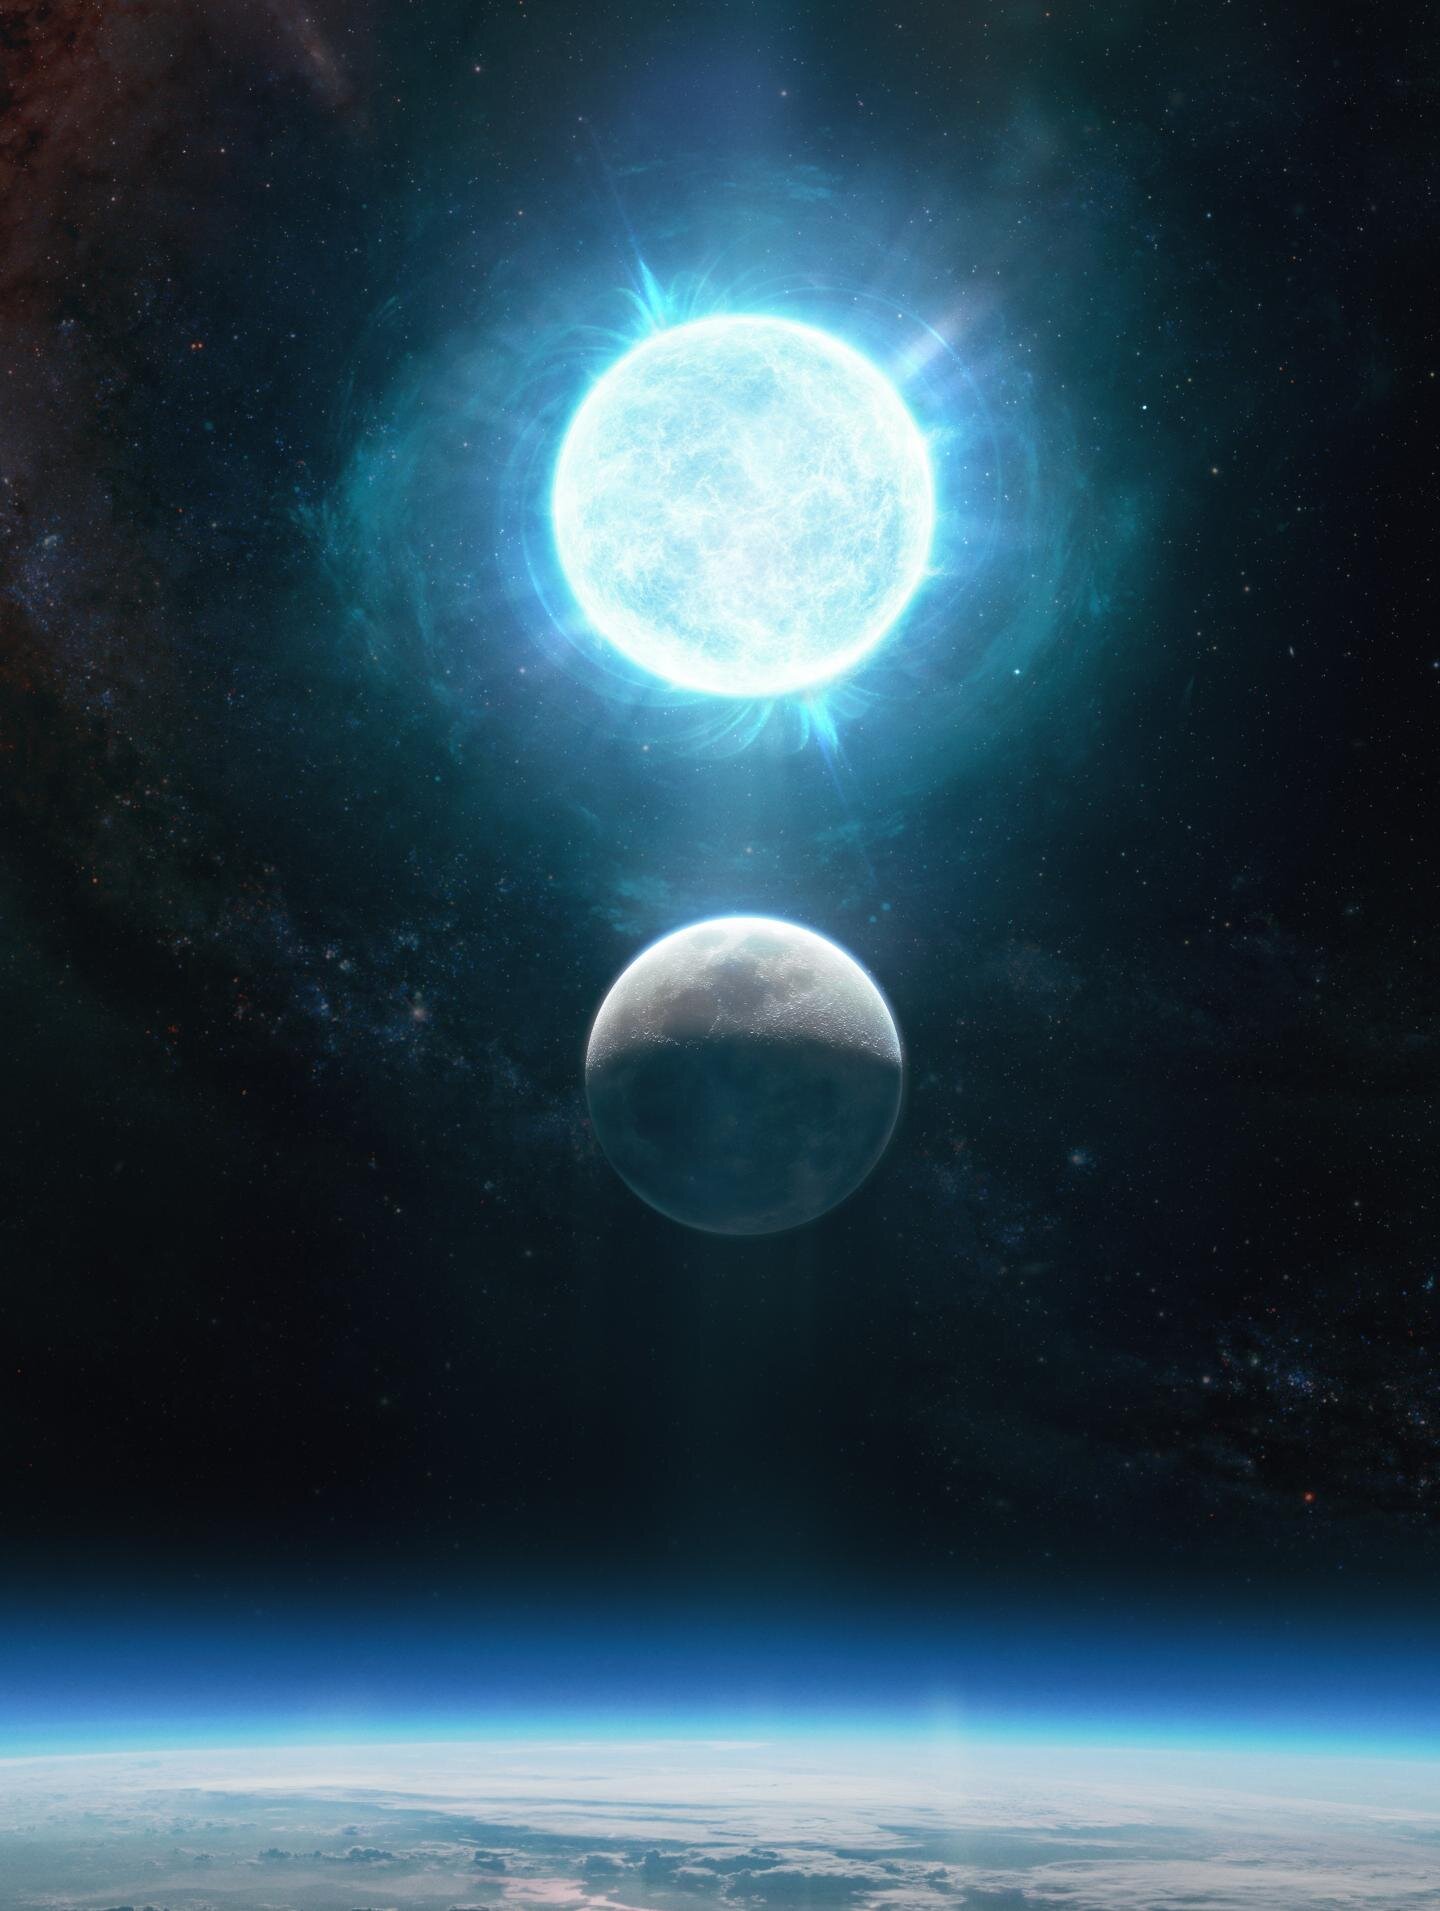 Βρέθηκε το μικρότερο άστρο – λευκός νάνος! Μέγεθος σελήνης και μάζα… μεγαλύτερη απ’ τον ήλιο 